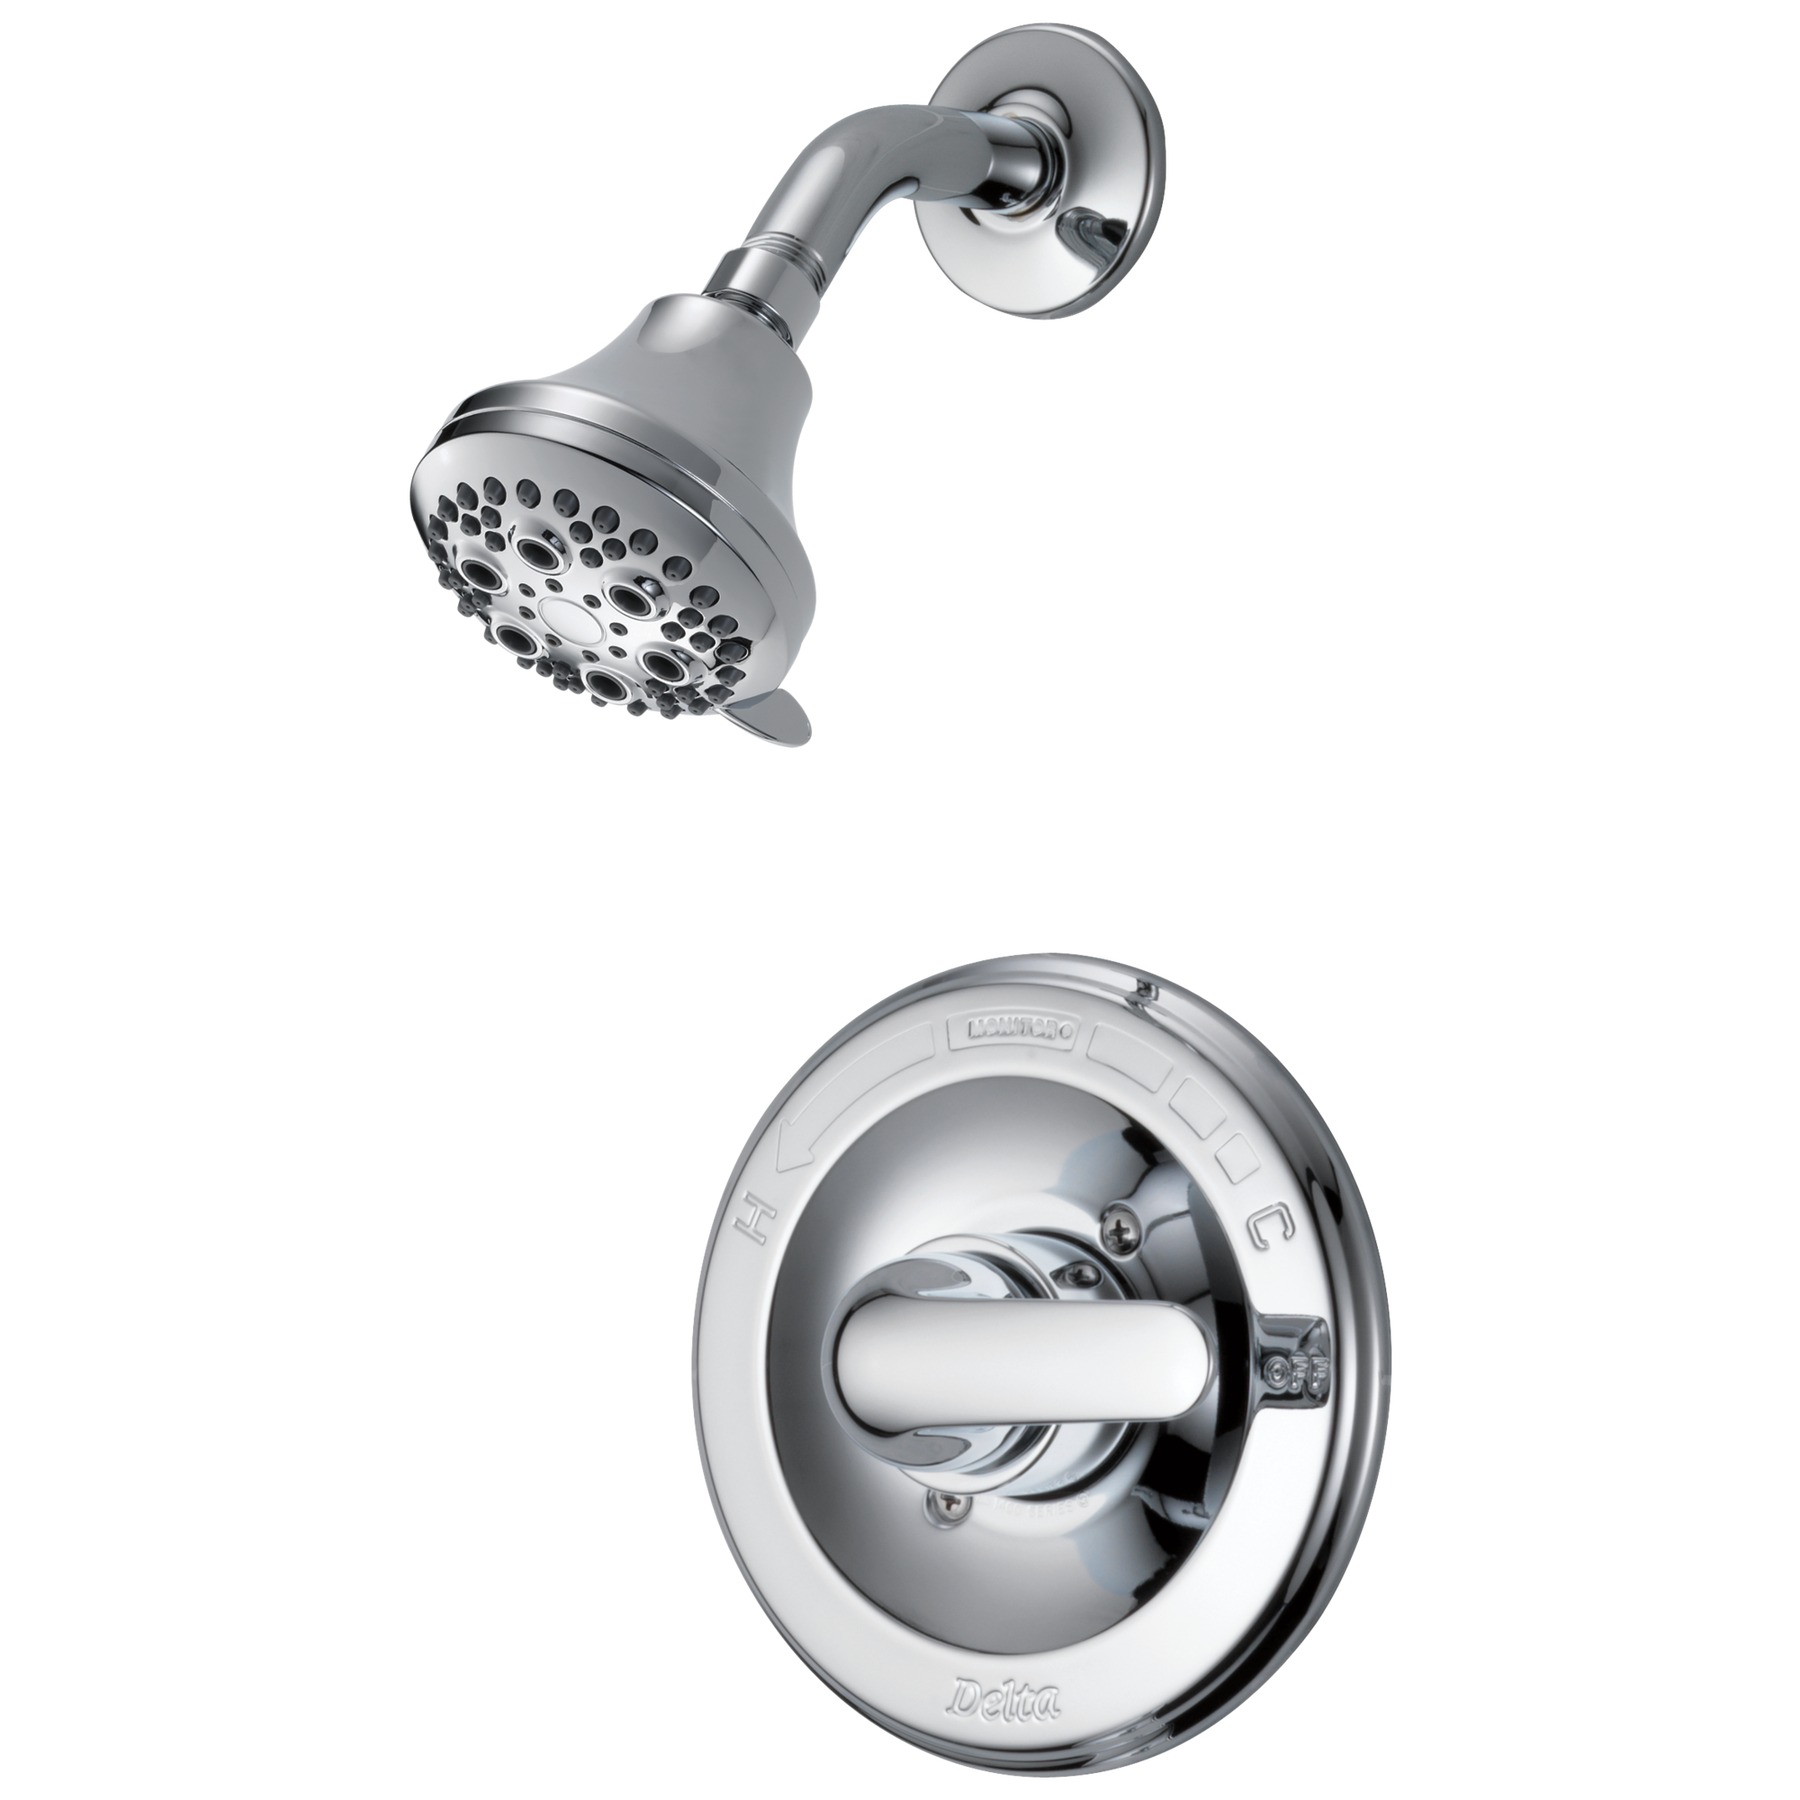 Ducha Monitor(R) serie 13, conjunto interior completo y accesorios de ducha  y bañera (producto recertificado) con acabado cromado 134900-A-R